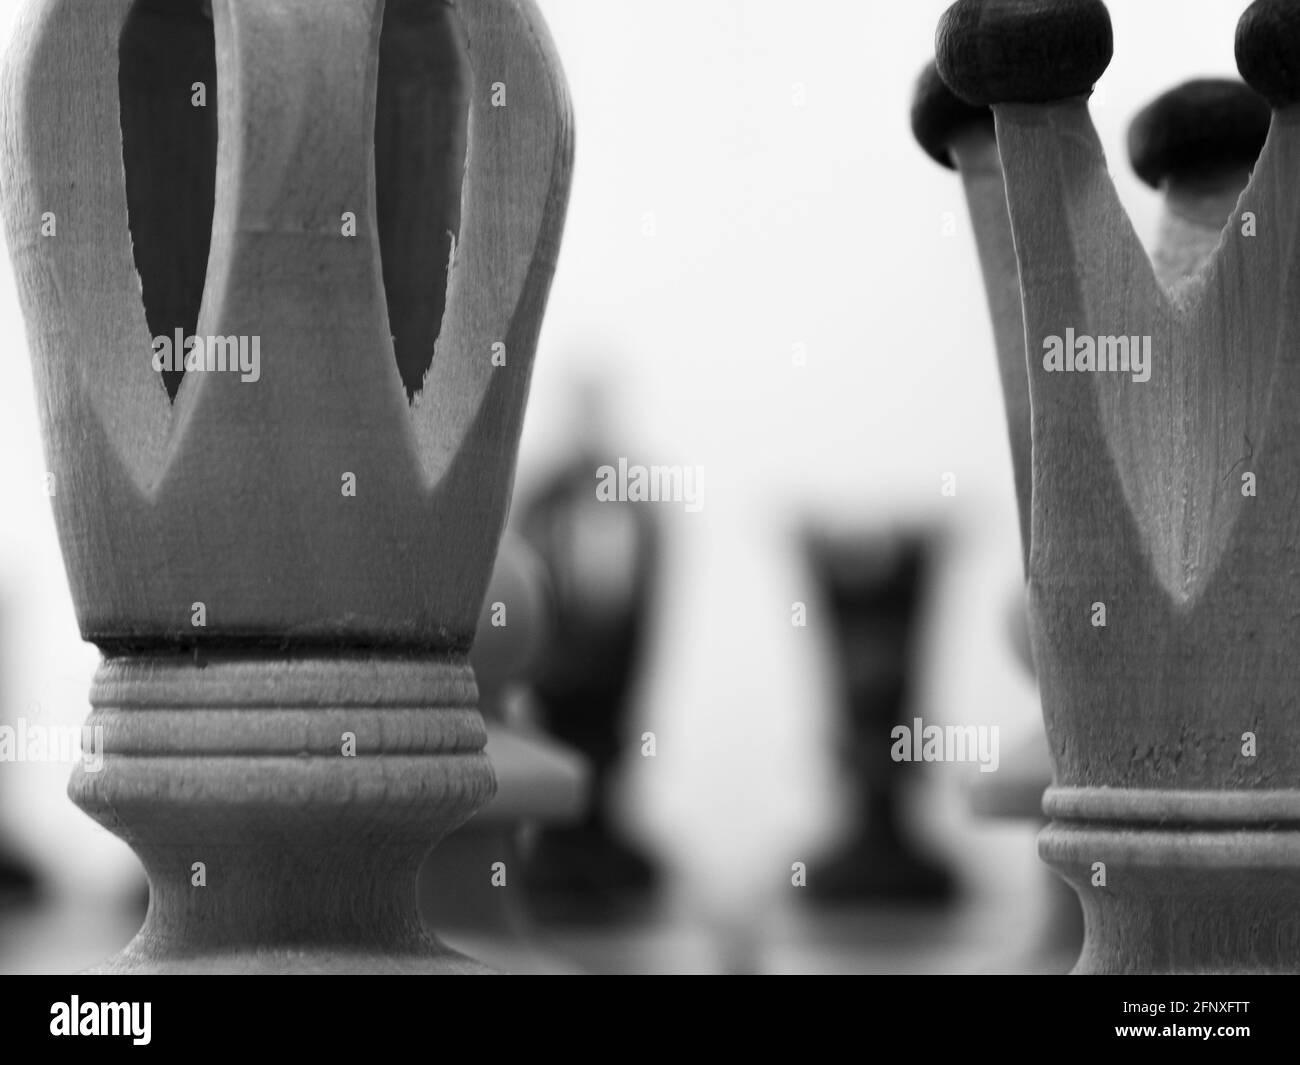 Pièces d'échecs. Gros plan sur les pièces d'échecs du roi et de la reine. Photographie en noir et blanc. Faible profondeur de champ. Des figures floues en arrière-plan. Banque D'Images